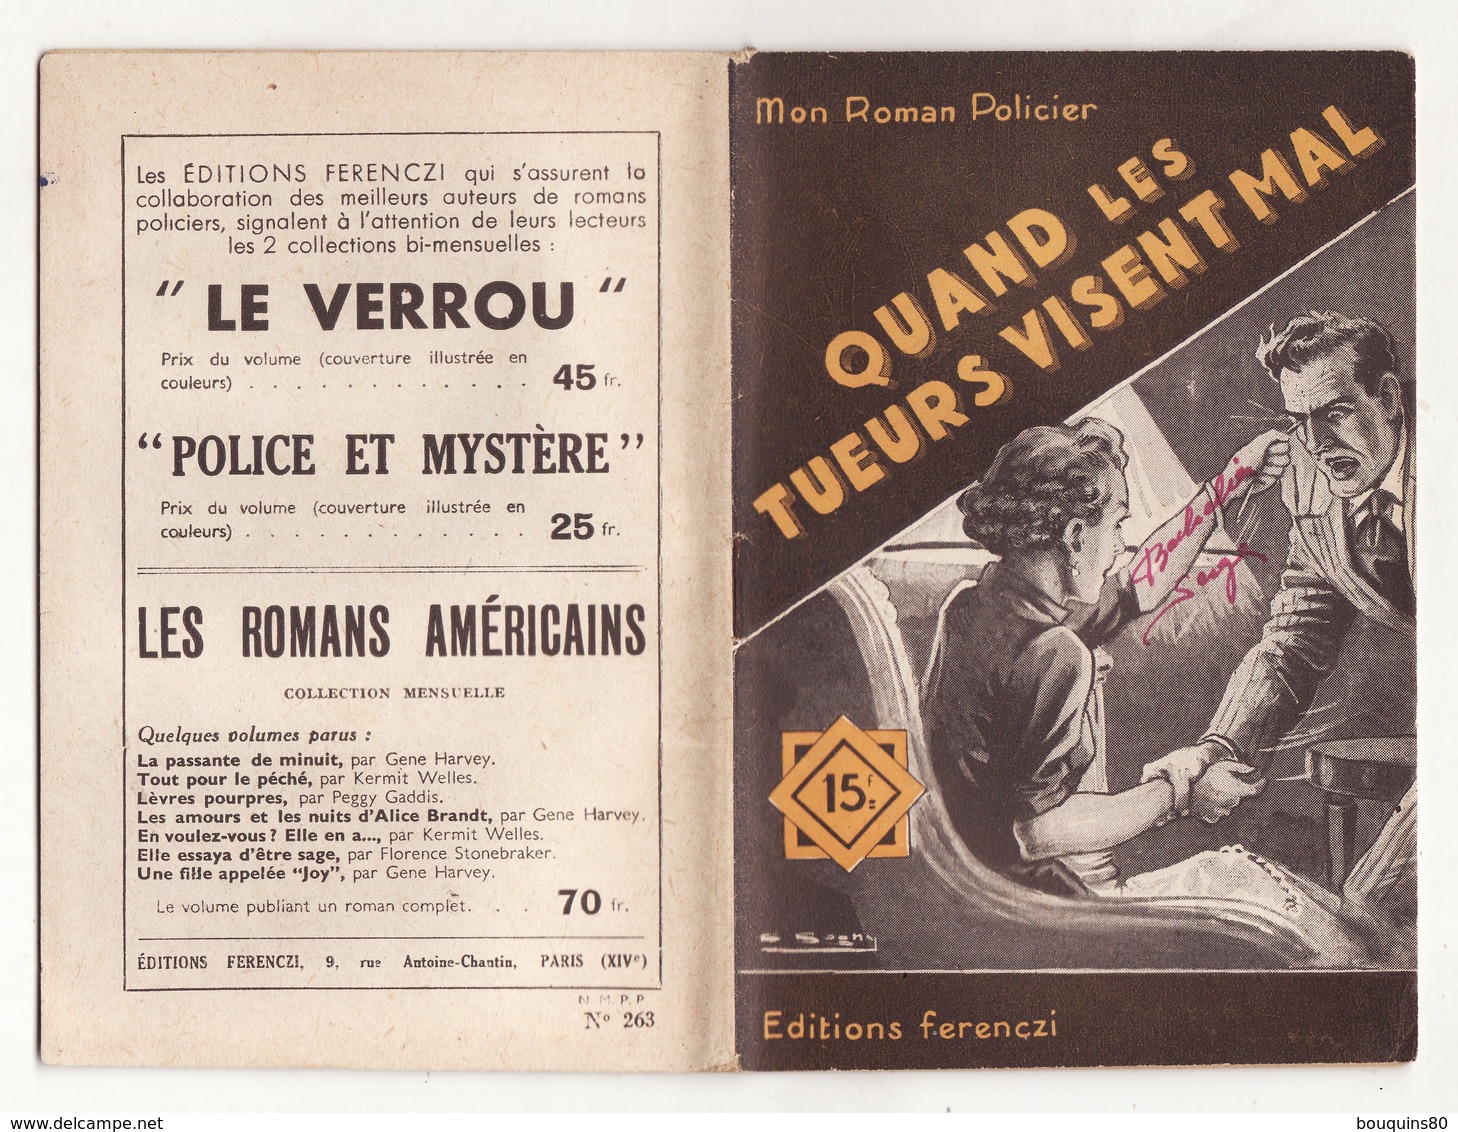 MON ROMAN POLICIER N°263 QUAND LES TUEURS VISENT MAL De PAUL TOSSEL 1953 Ferenczi - Ferenczi